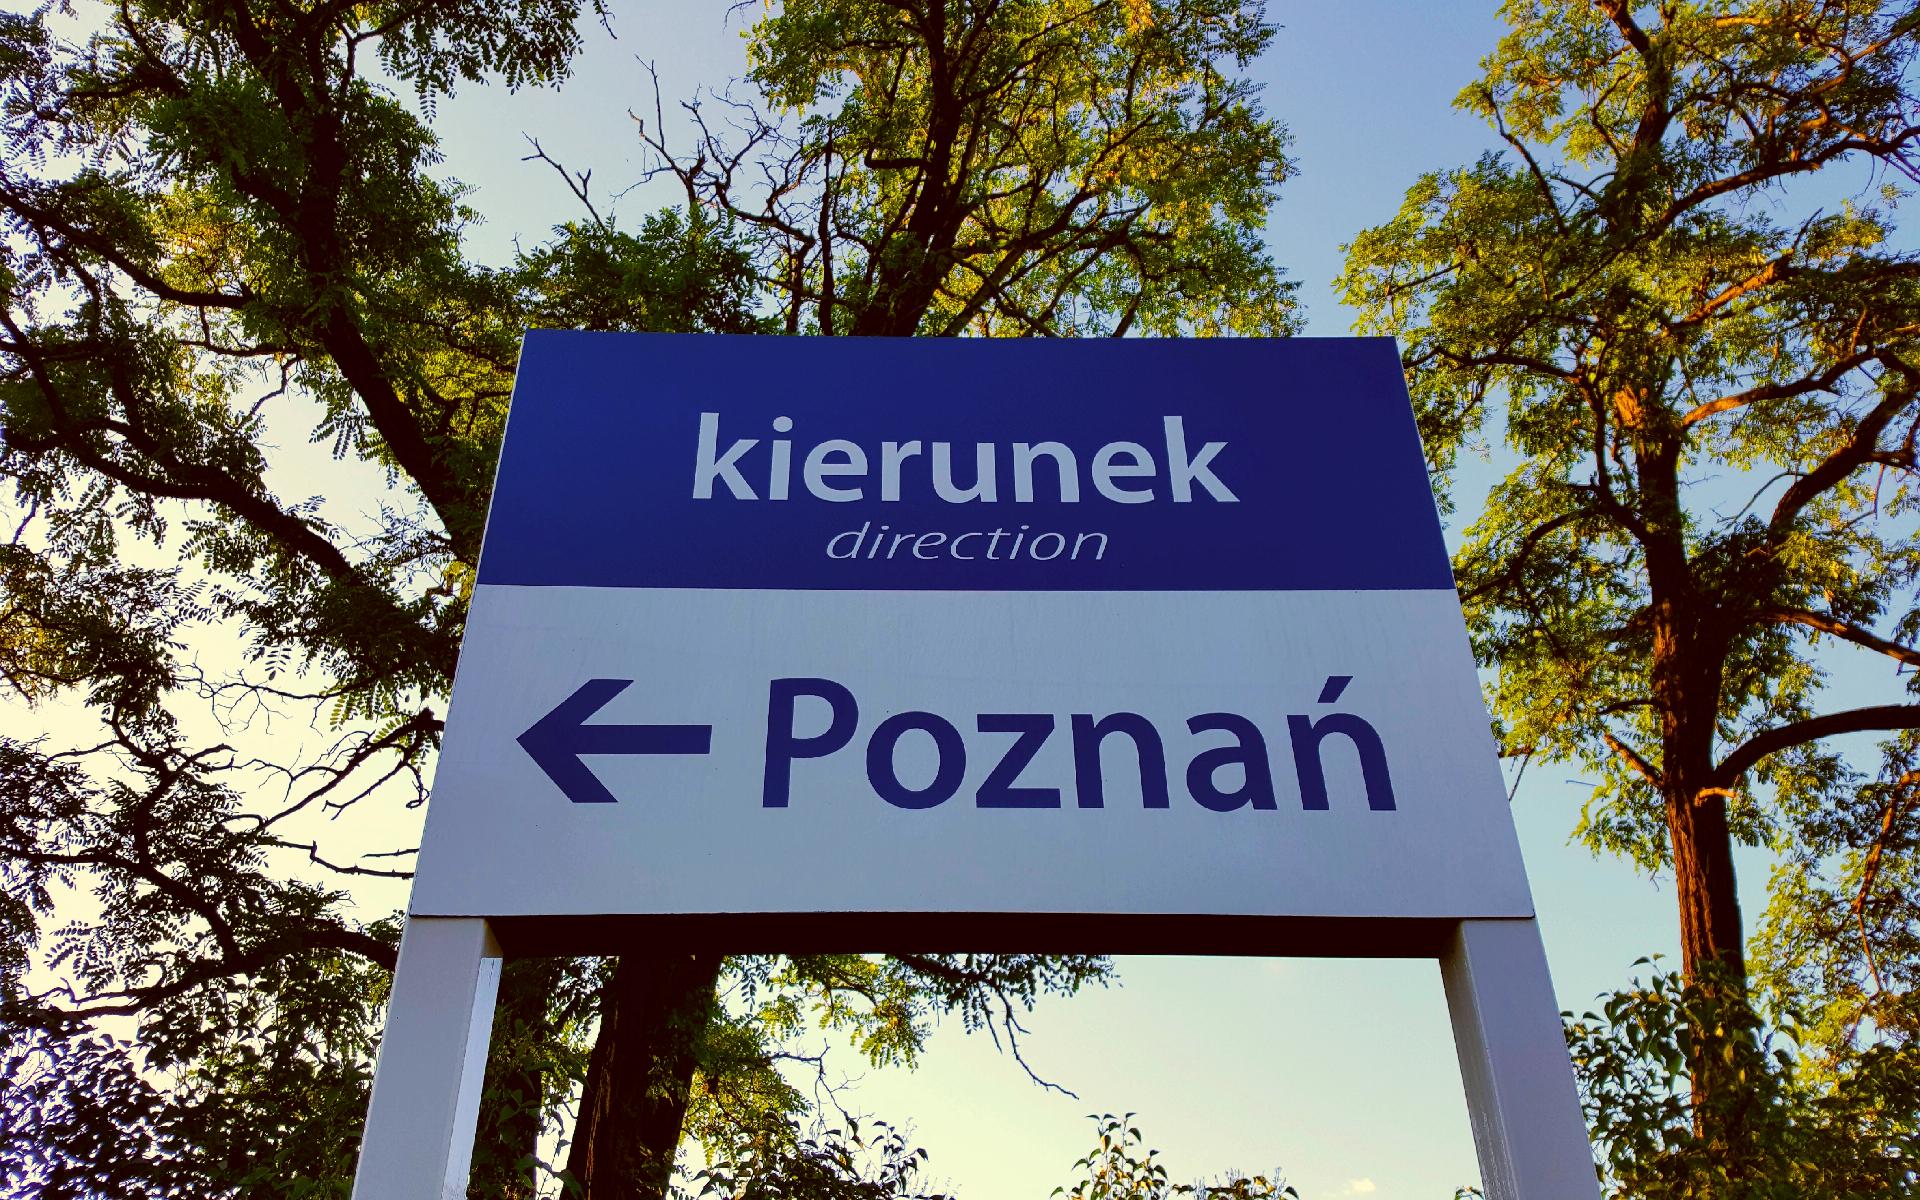 Kierunek: Poznań!